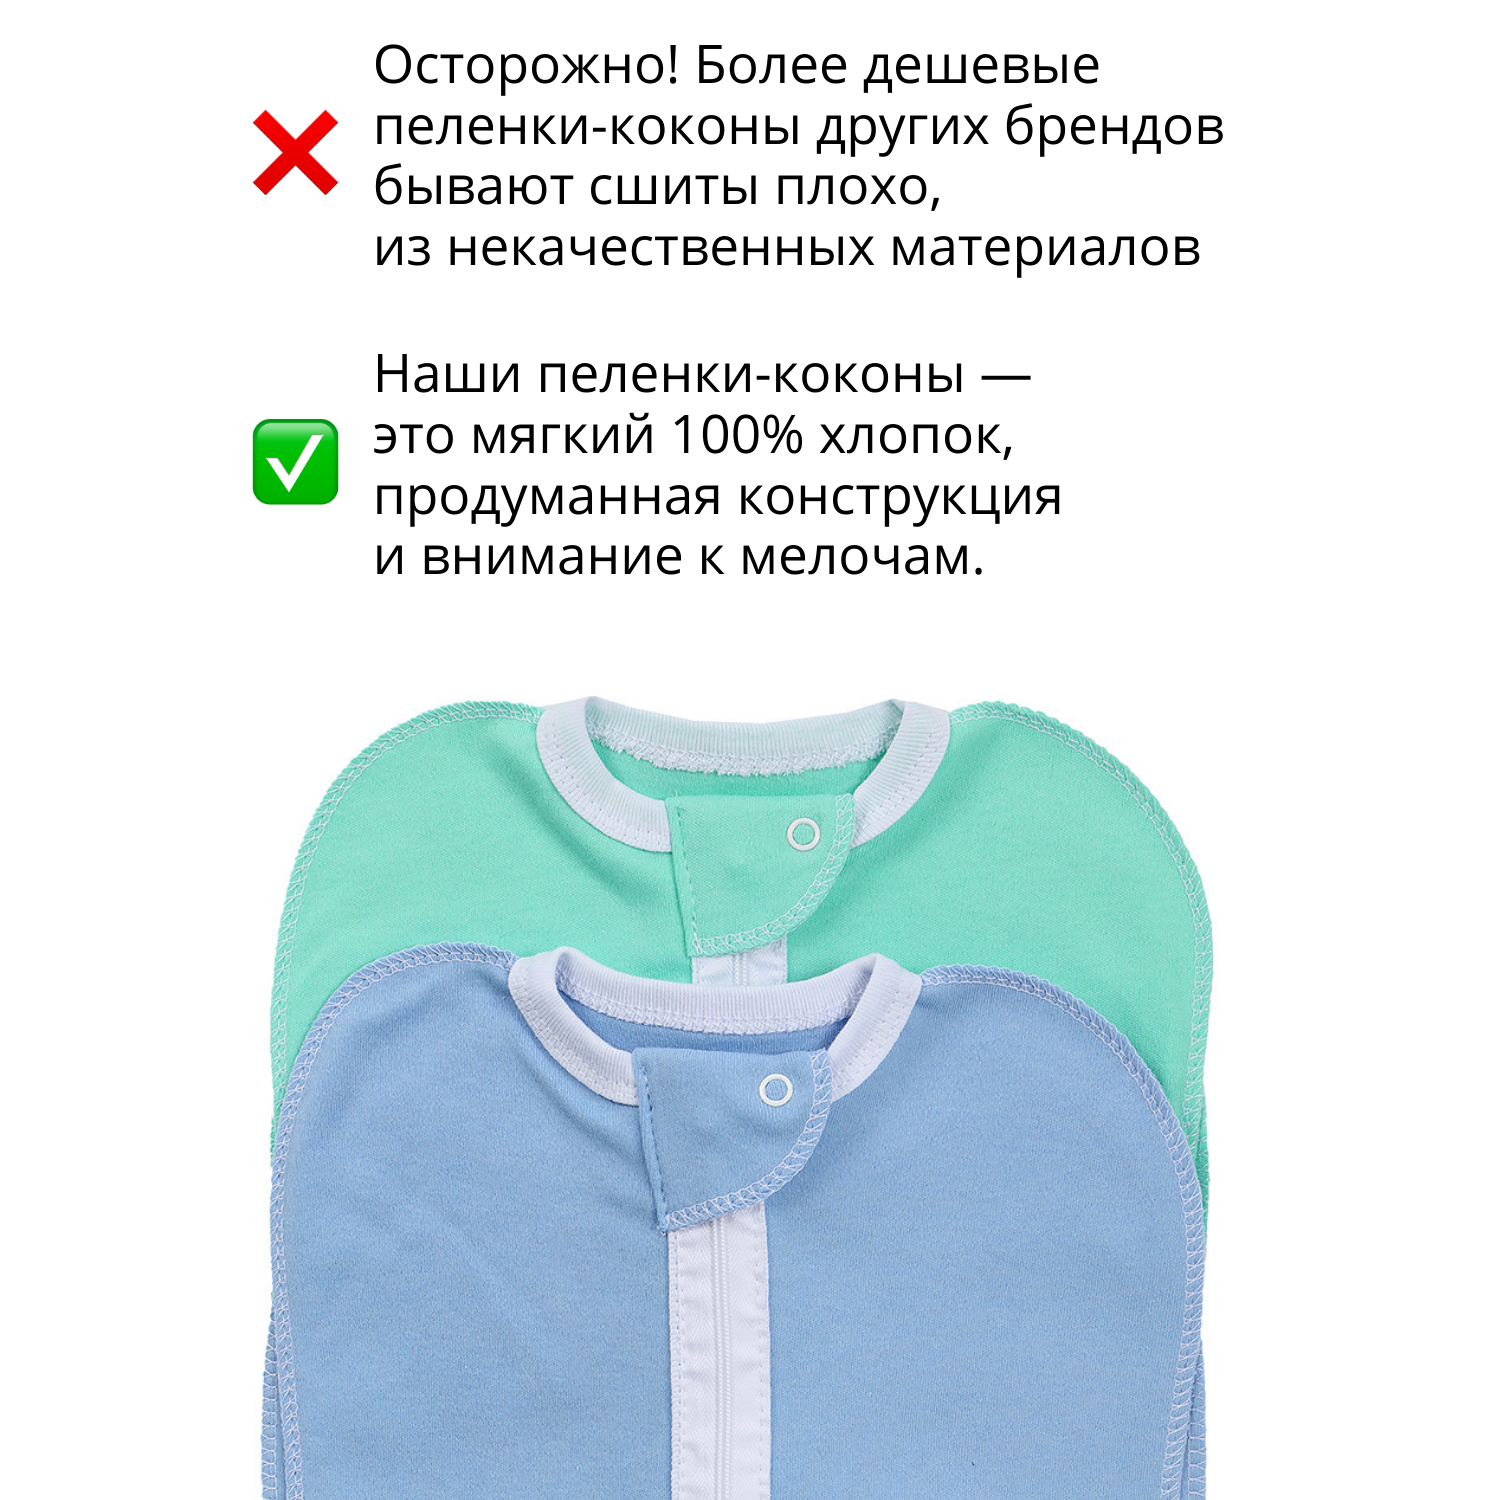 Пеленка-кокон Mums Era для новорожденных на молнии голубой и зеленый 2 шт - фото 4